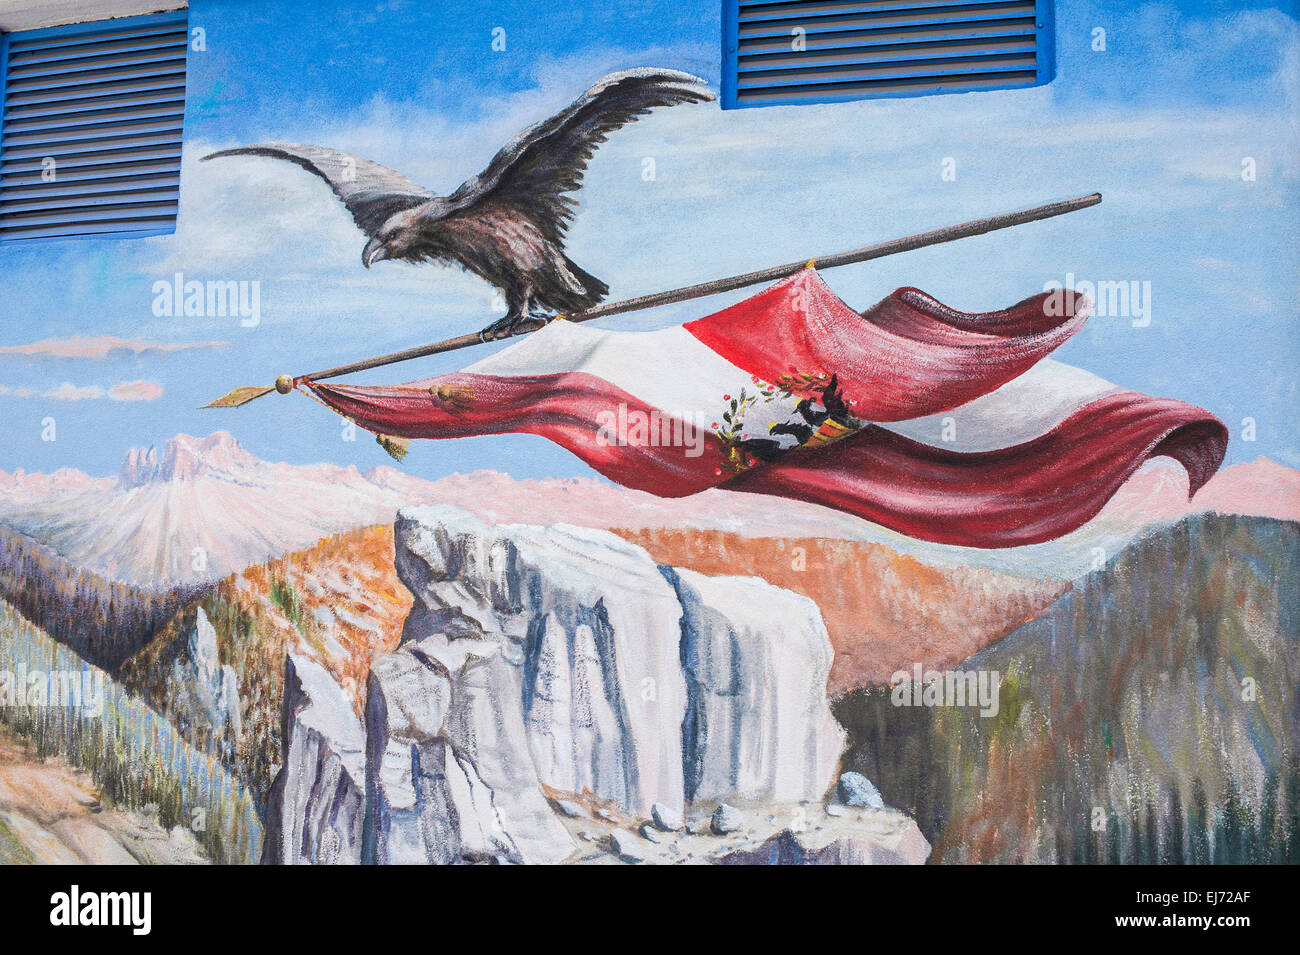 Hotel Dolomiti, murale, motif dell'Impero Austriaco, Canazei, Trentino-Alto Adige, Italia Foto Stock